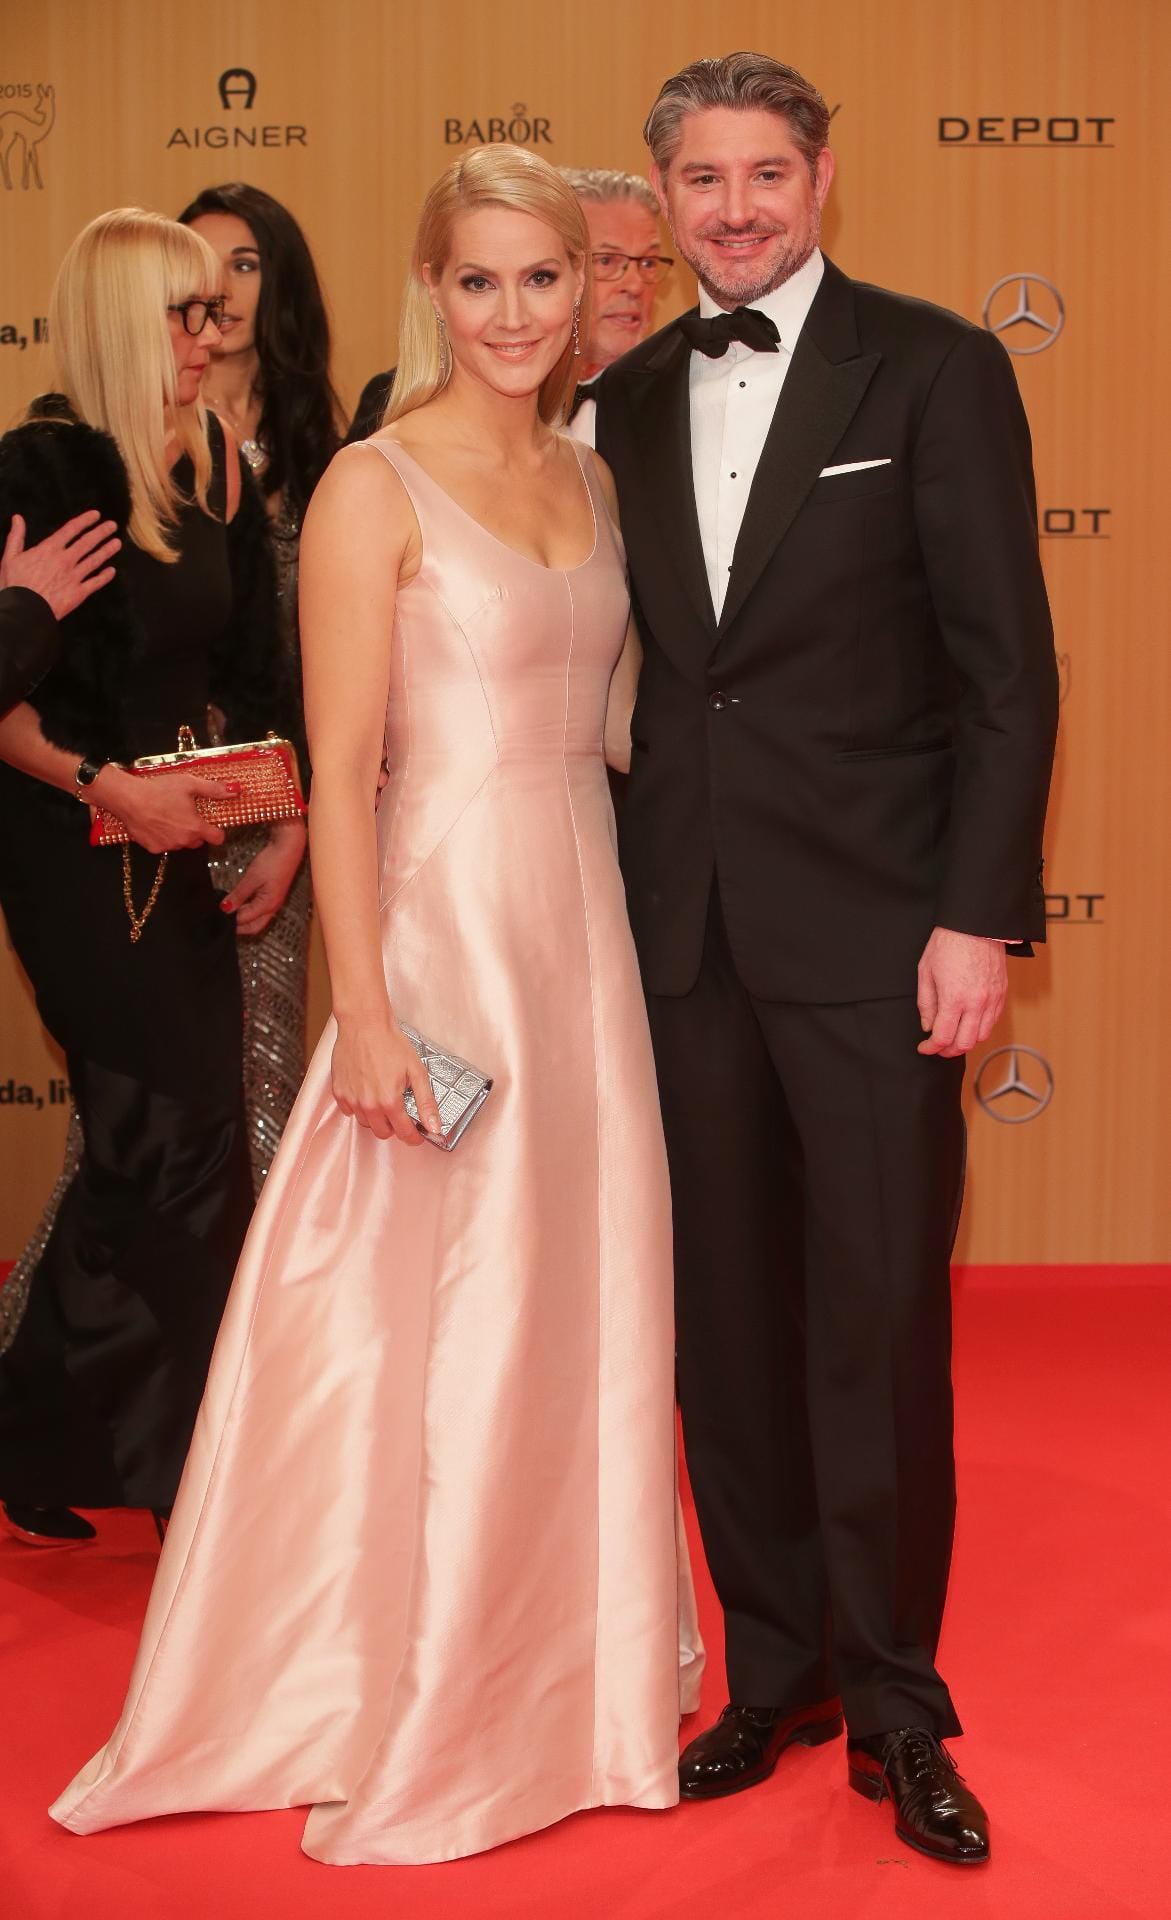 "Tagesschau"-Moderatorin Judith Rakers - hier mit Ehemann Andreas Pfaff - betonte im schlichten zartrosa Outfit ihre natürliche Schönheit.